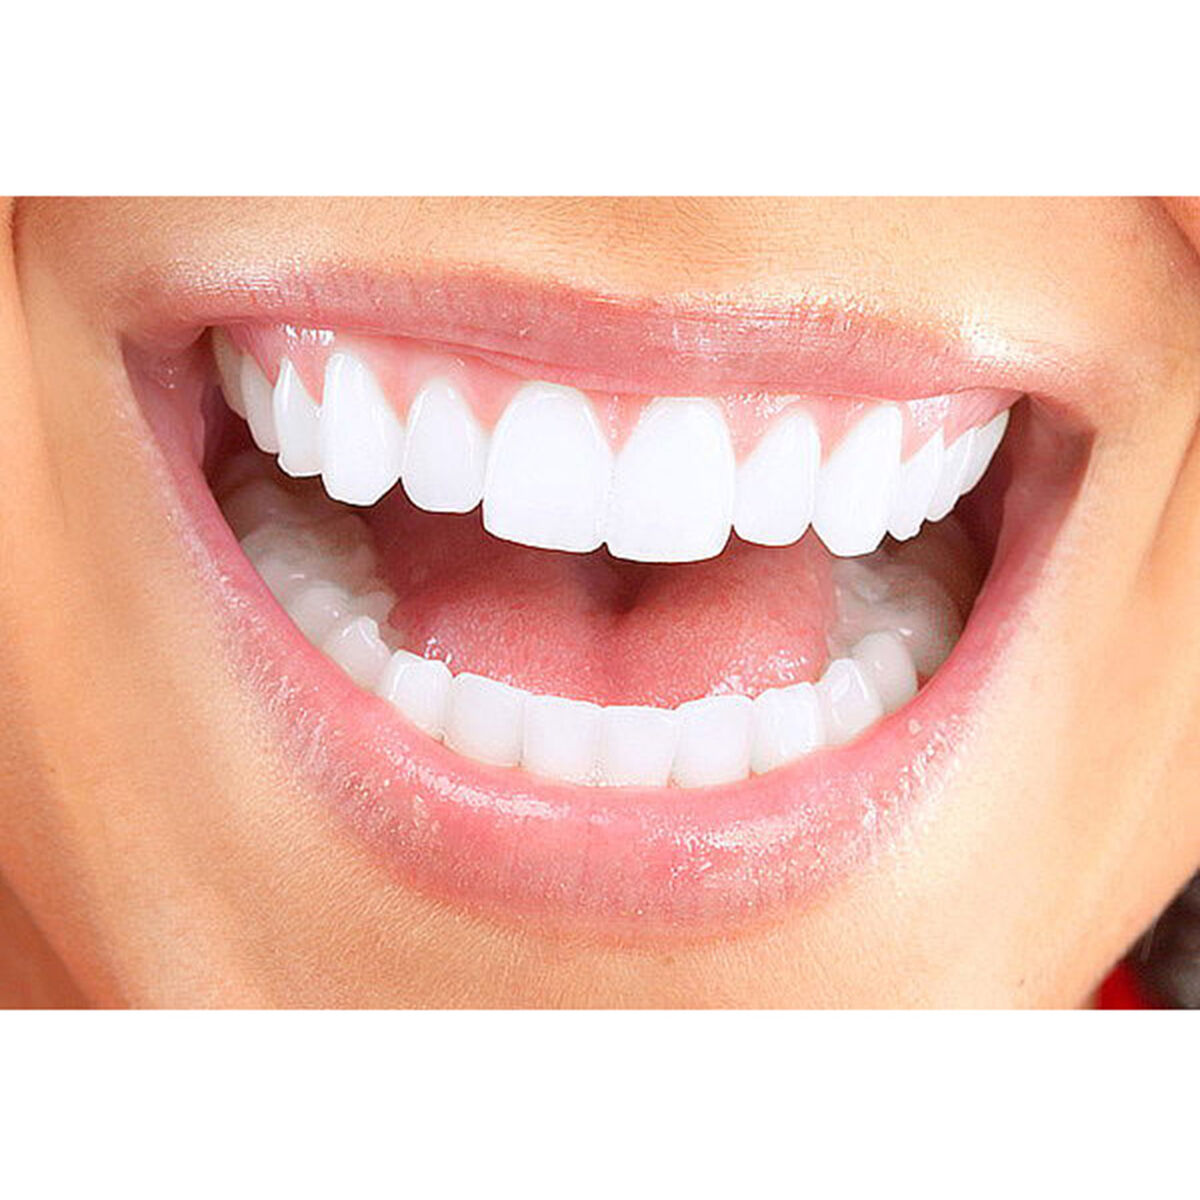 Limpieza dental + blanqueamiento en Clínica Odontológica Dentointegral, Providencia